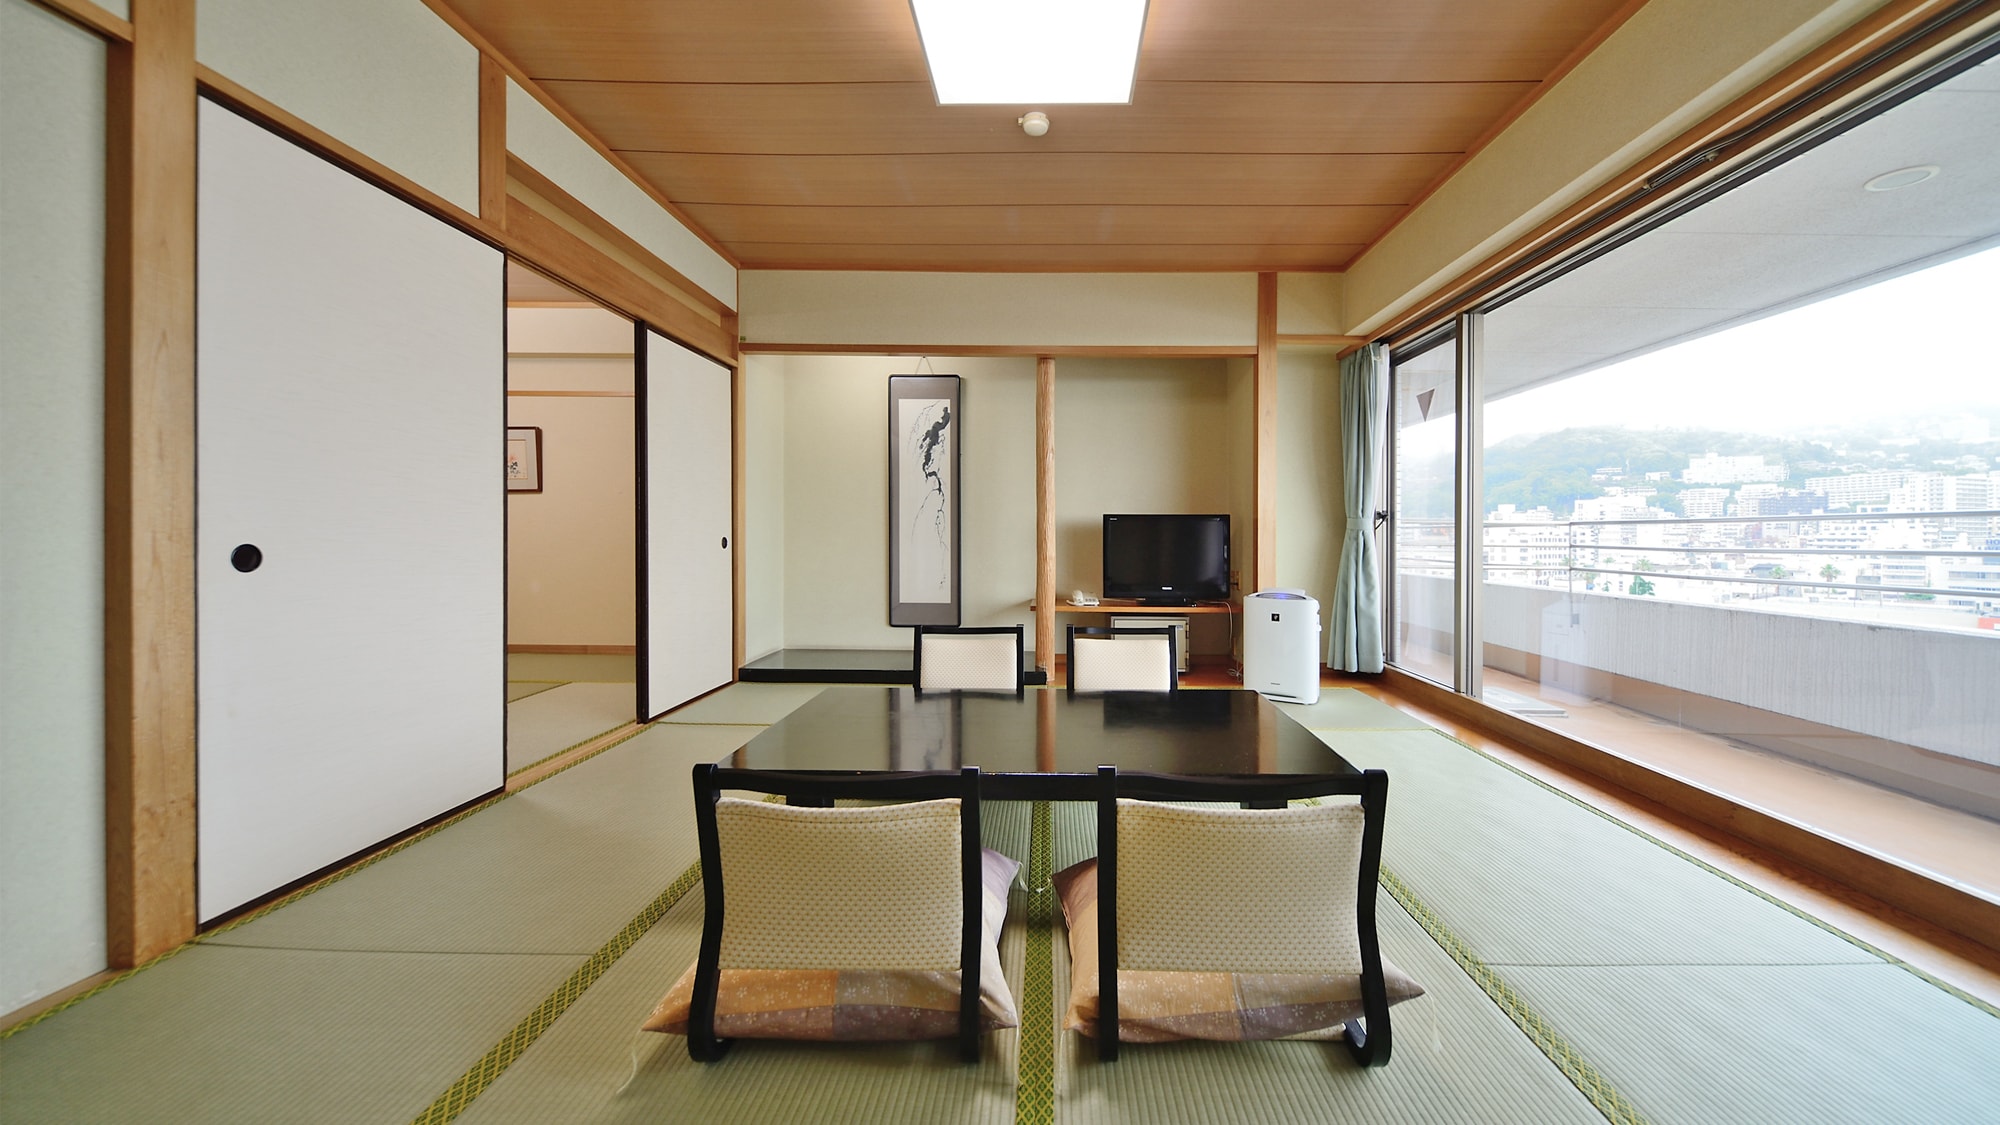 【일본식 객실 44평방미터】 상미 클럽의 스탠다드 객실입니다. 다음 간부이므로 넓게 보내실 수 있습니다.